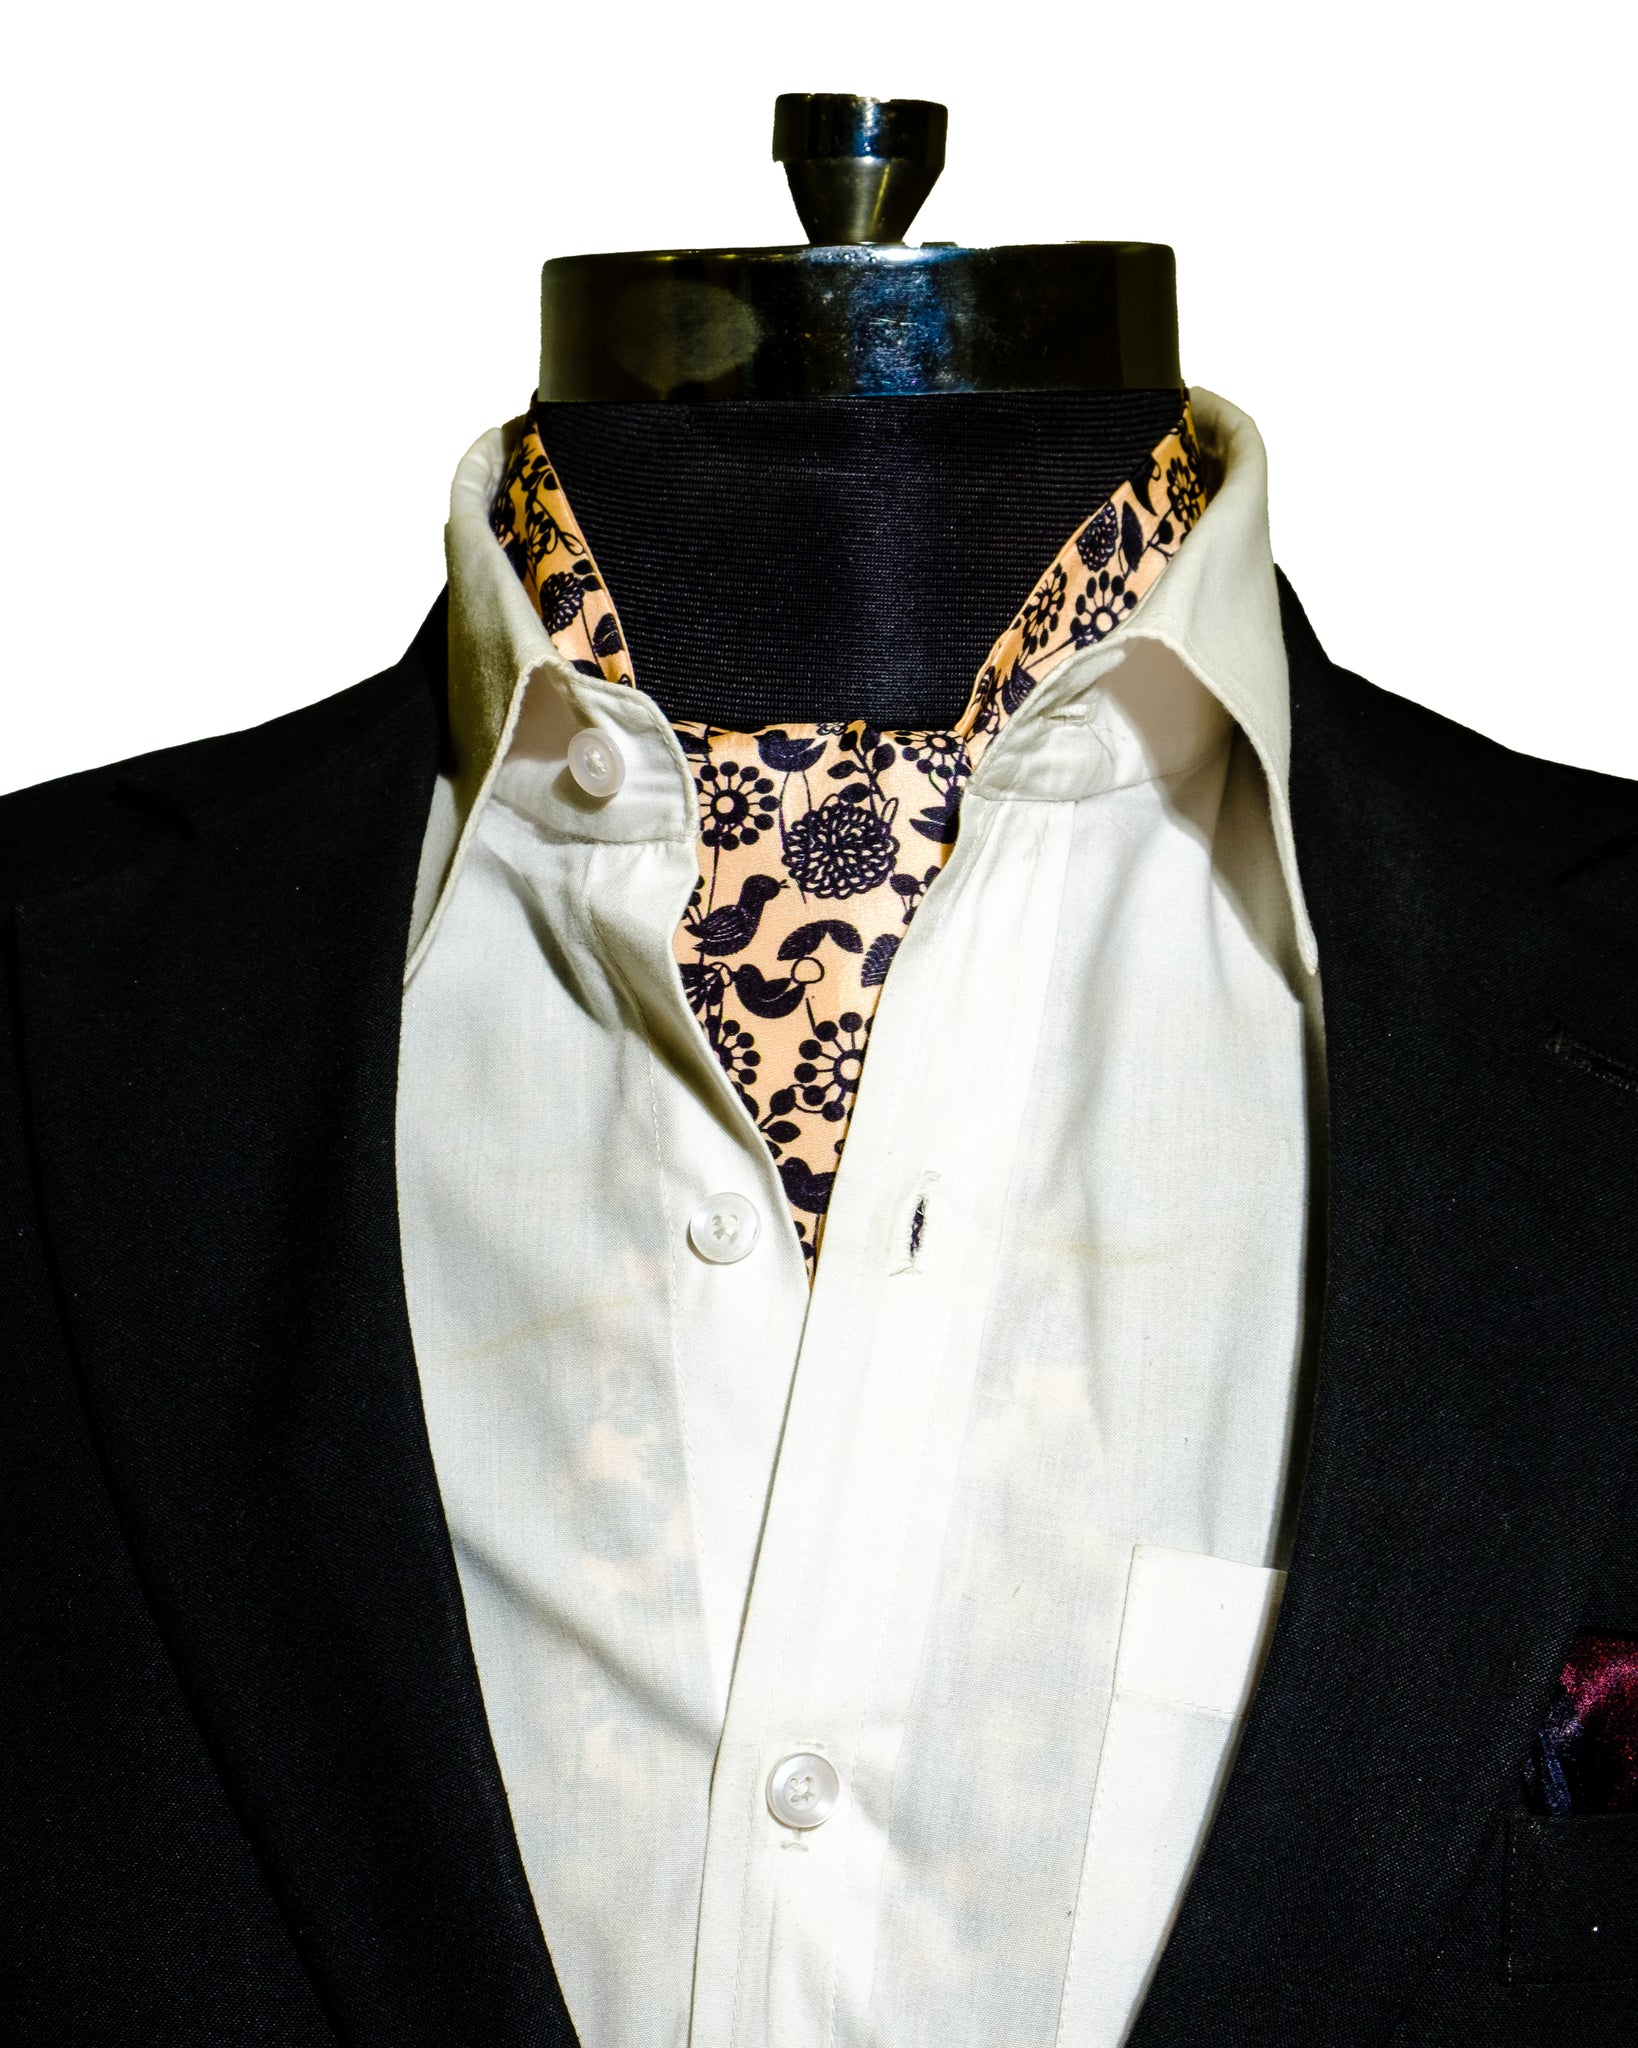 Buy Cravats for Men Online in India | Chokore